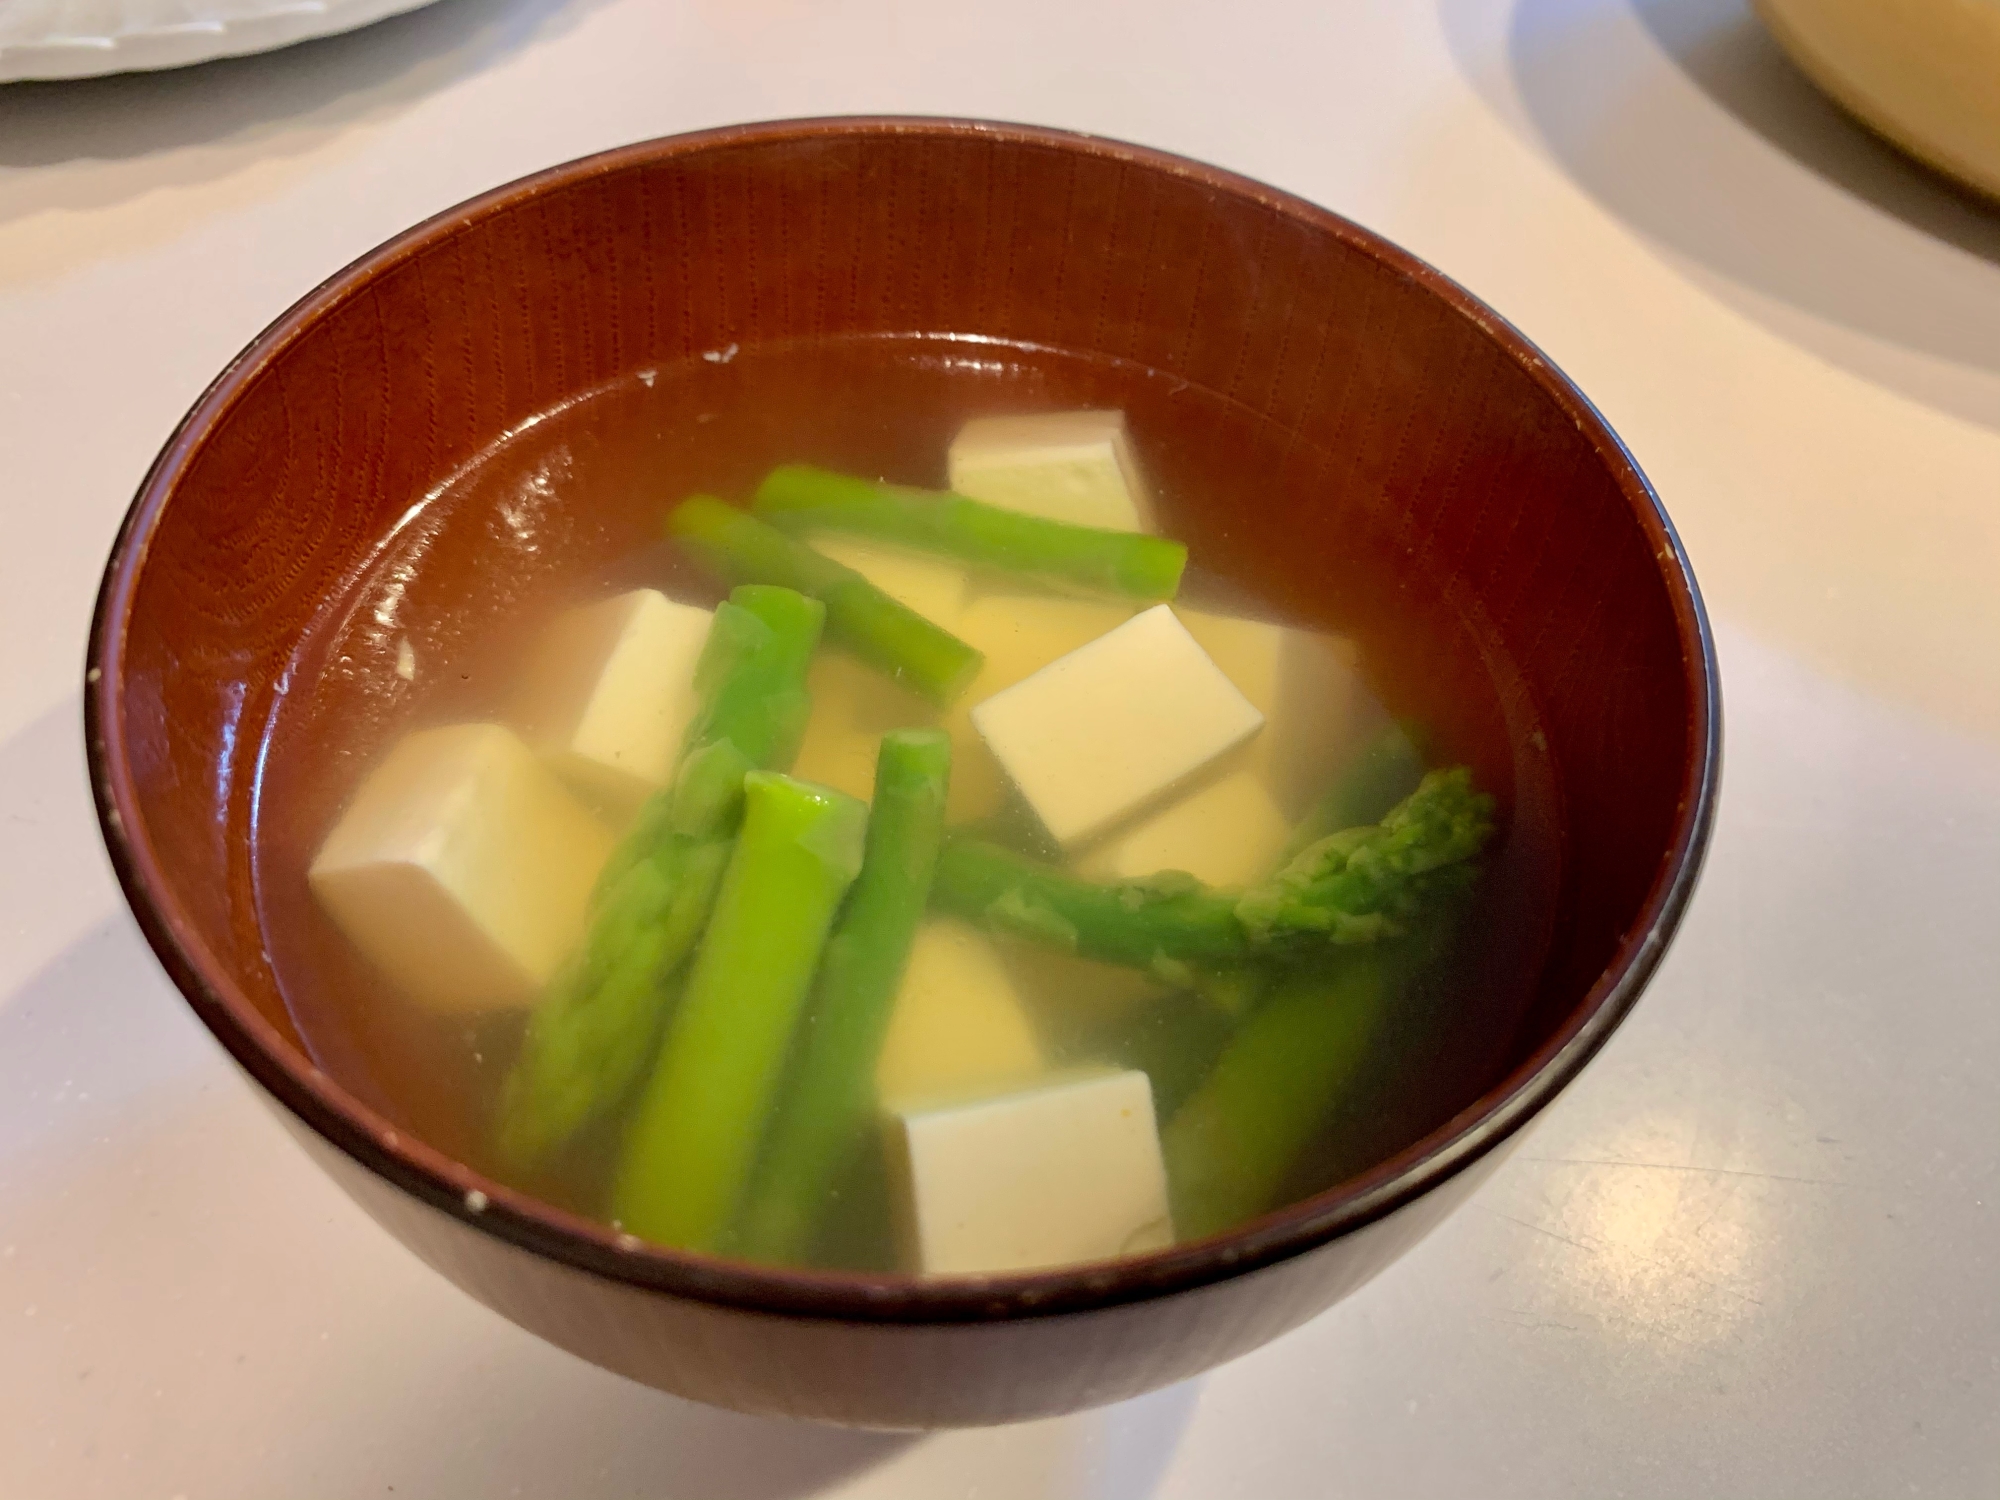 アスパラ豆腐スープ